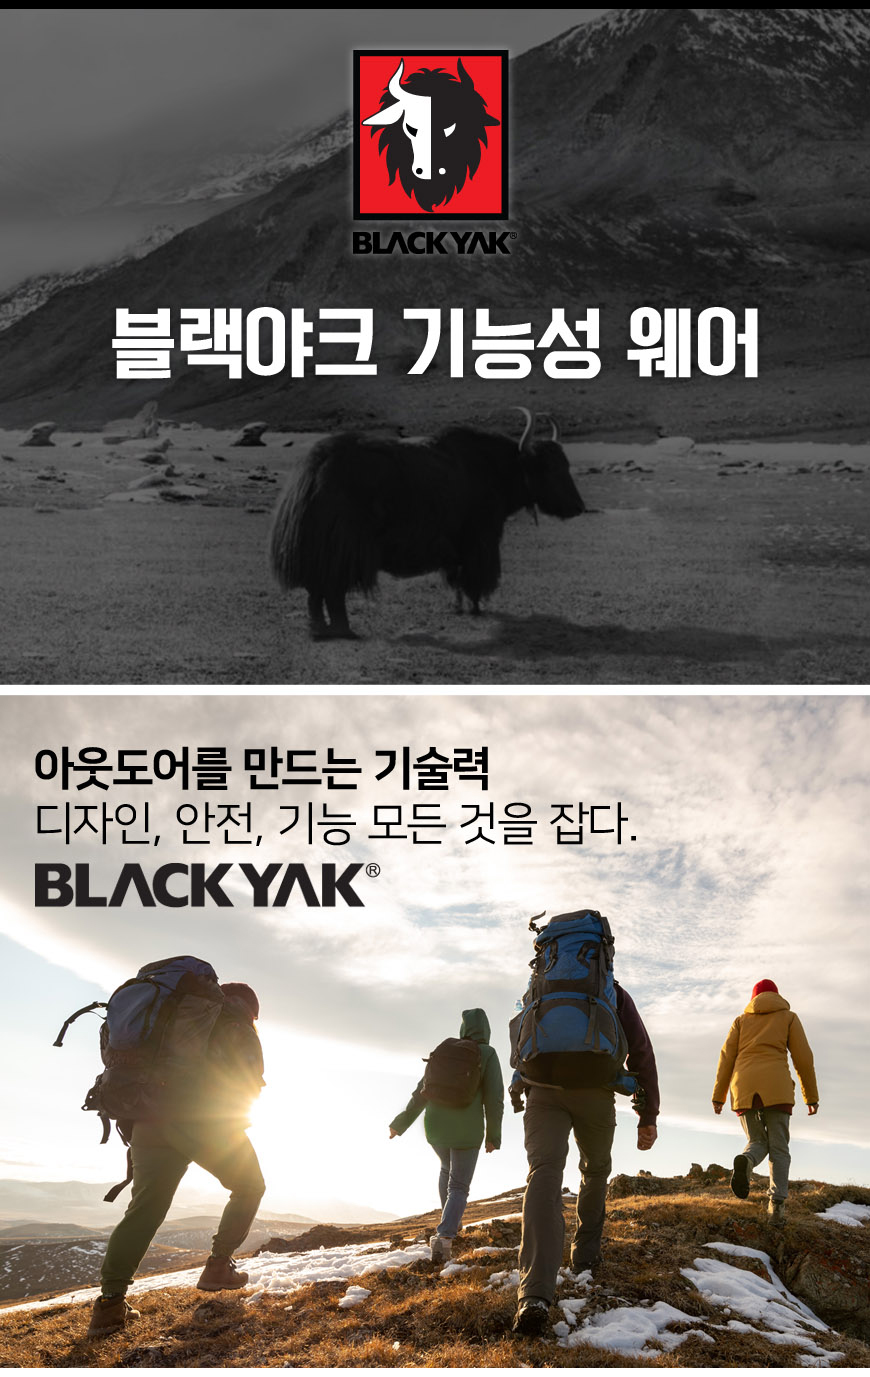 BlackYak_S_Polo_T_01.jpg